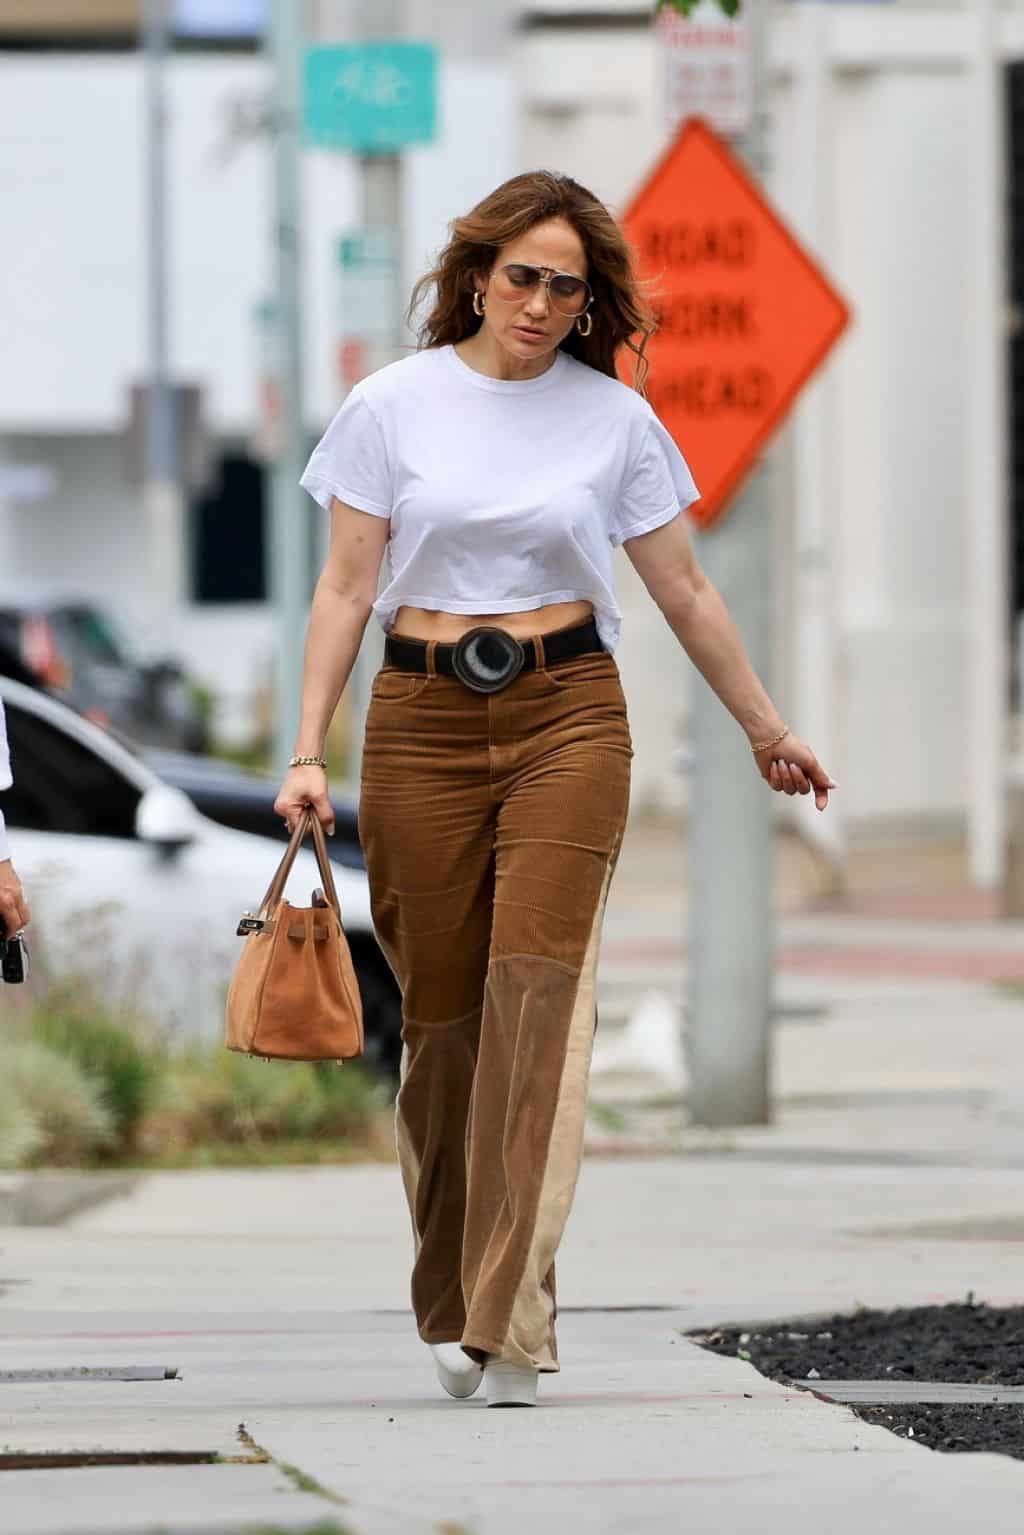 Jennifer Lopez Rocks 70's Style in Brown Corduroy Jeans as She Runs Errands